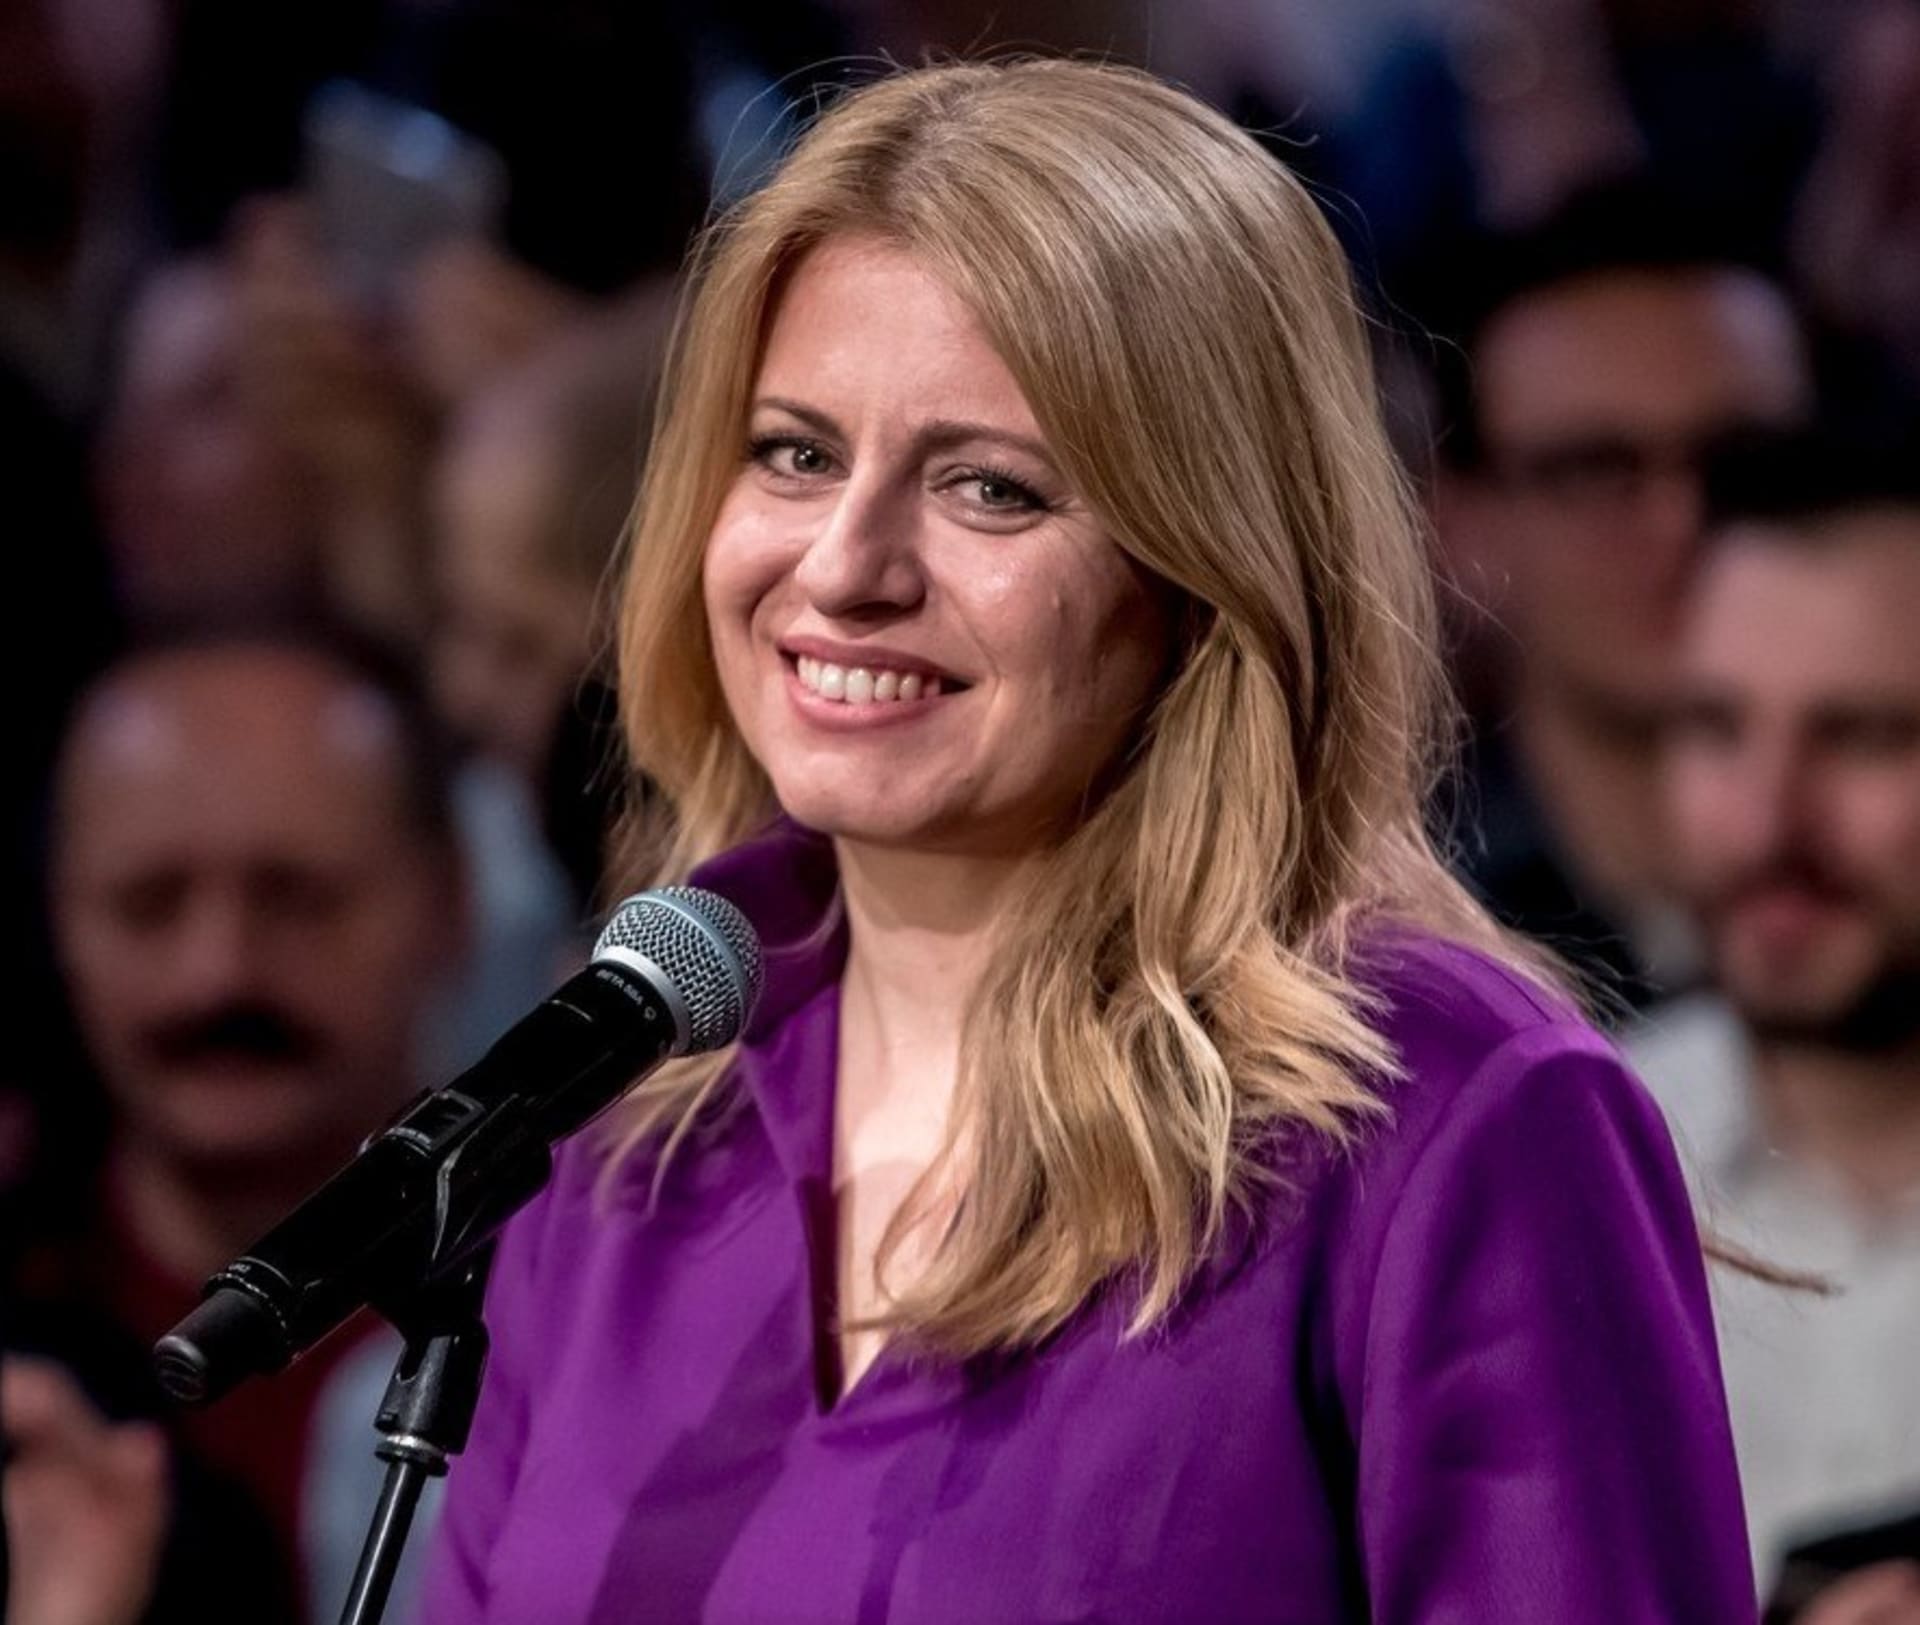 Slováci si zvolili Zuzanu Čaputovou za svou první ženu-prezidentku. Blíží se změna politického stylu?